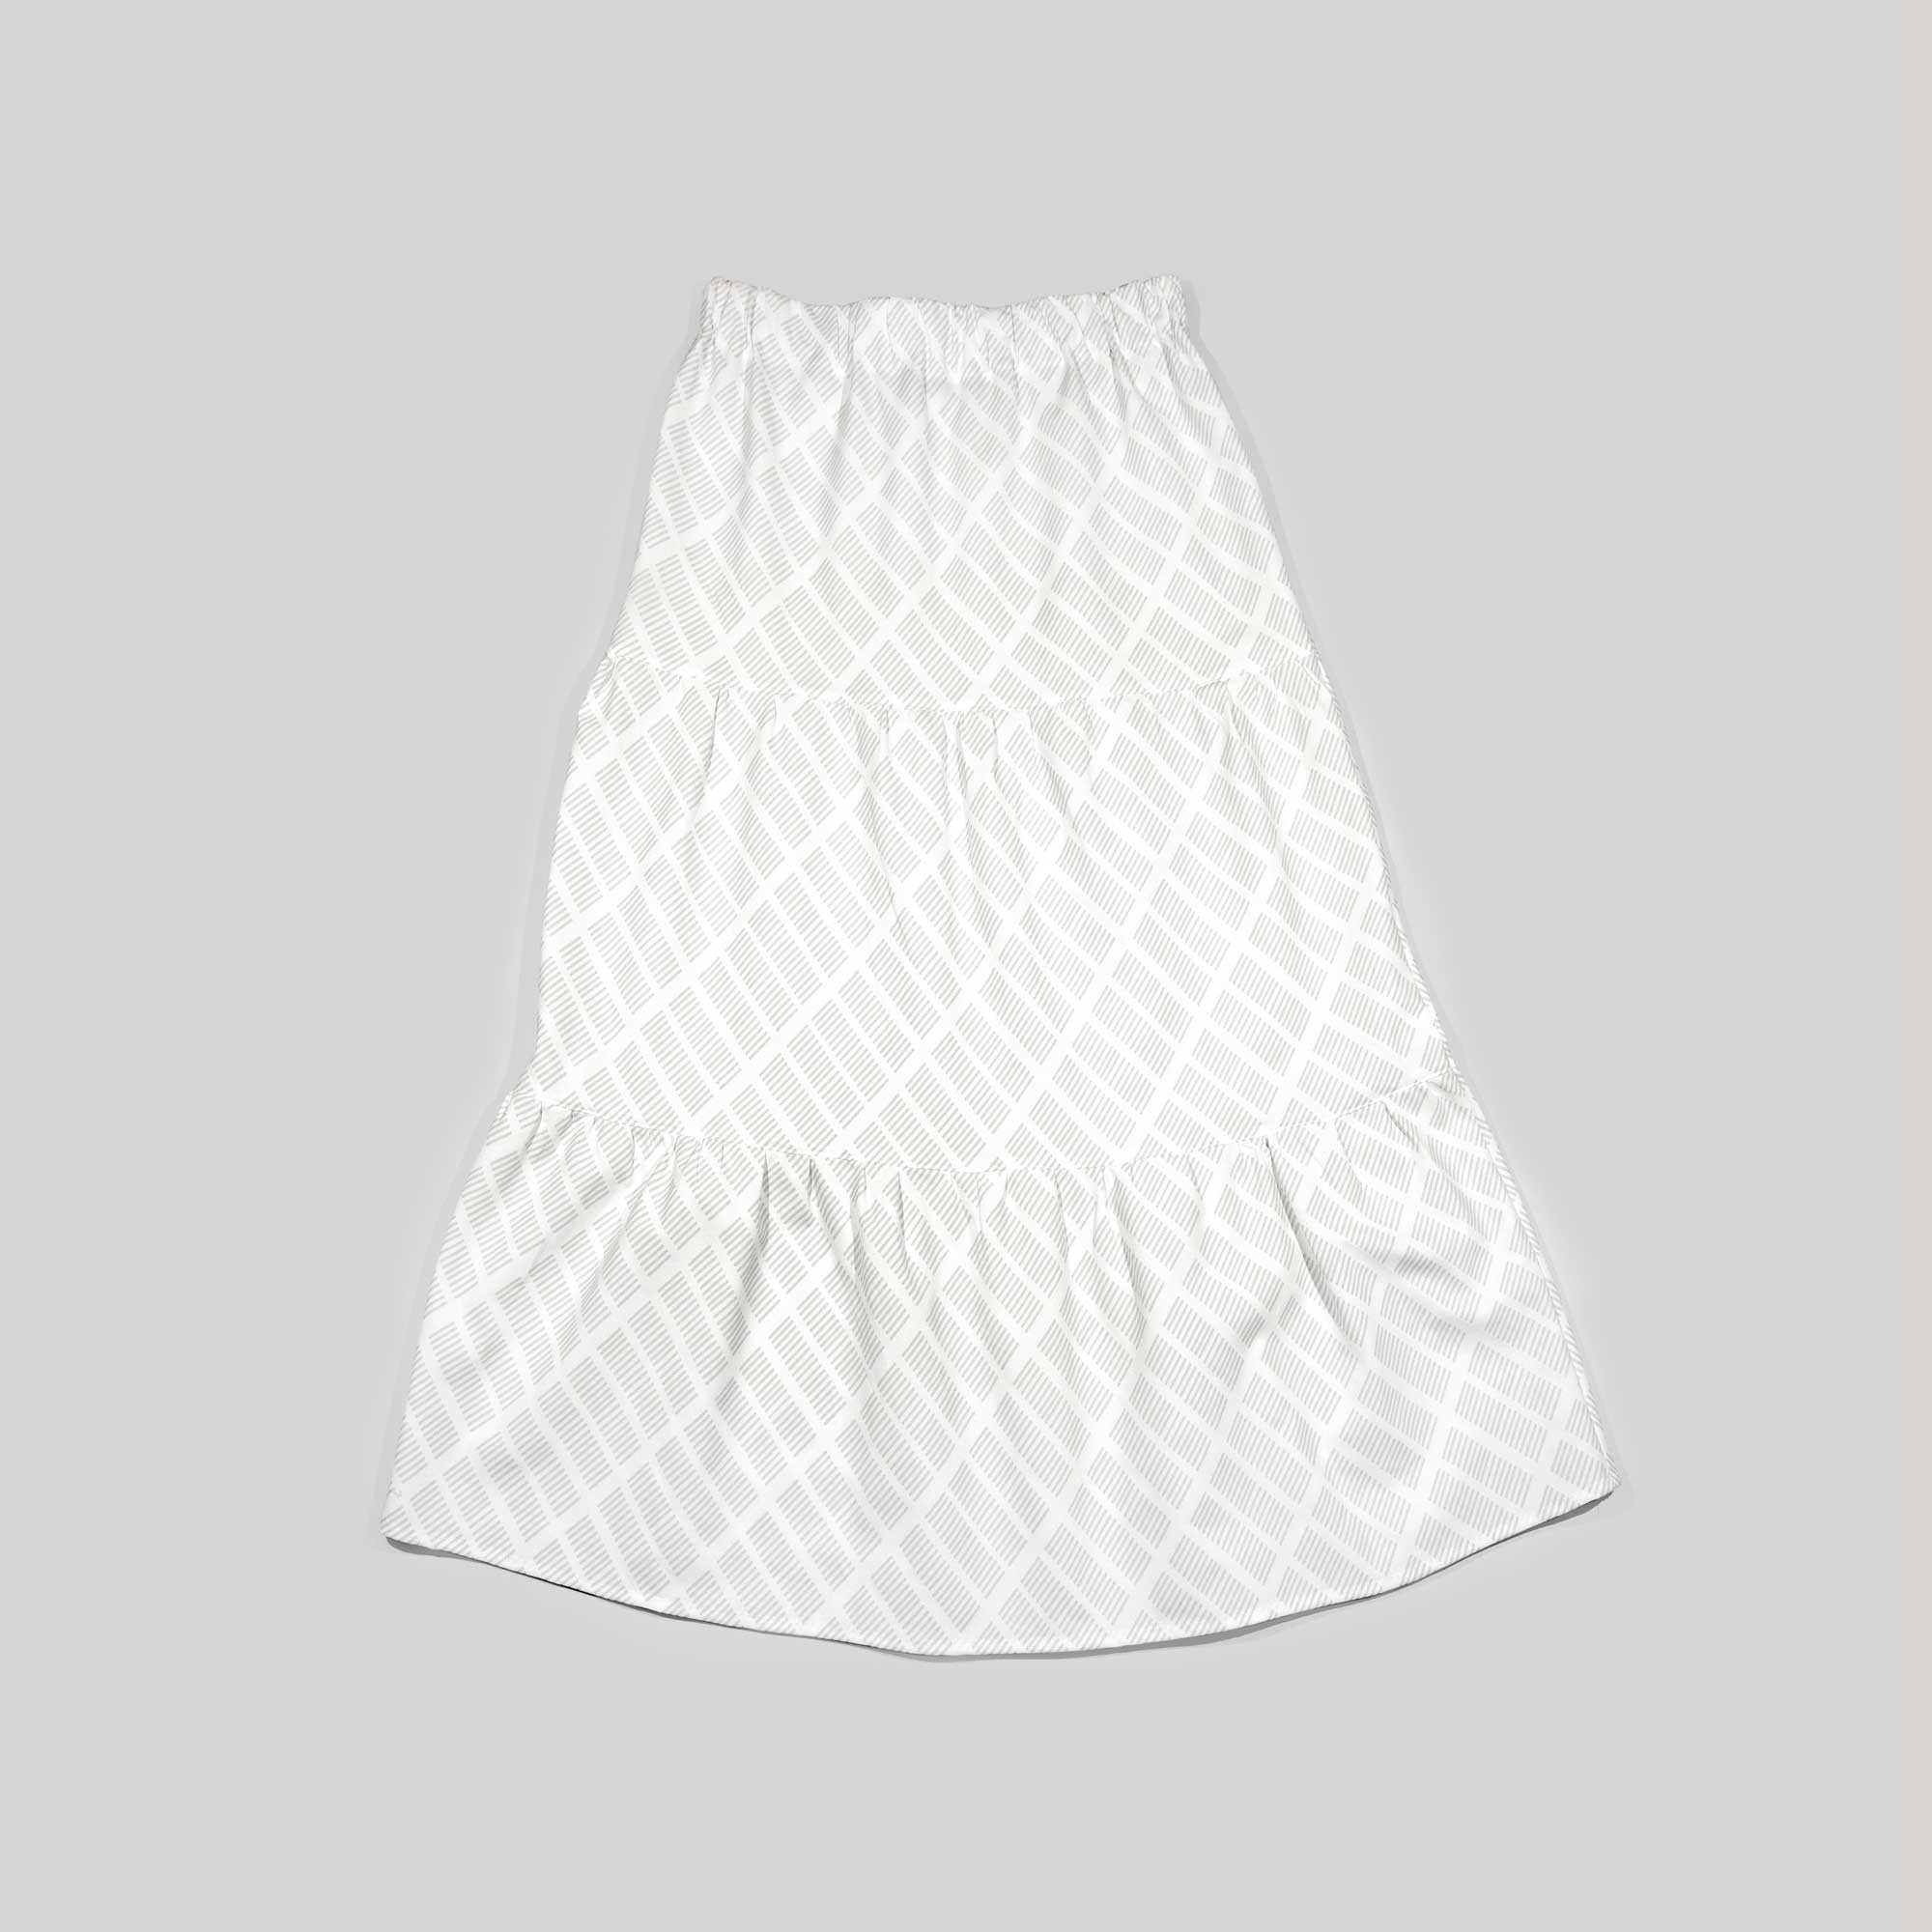 Sonya skirt, Tile grey, design Anne Rosenberg, RosenbergCph